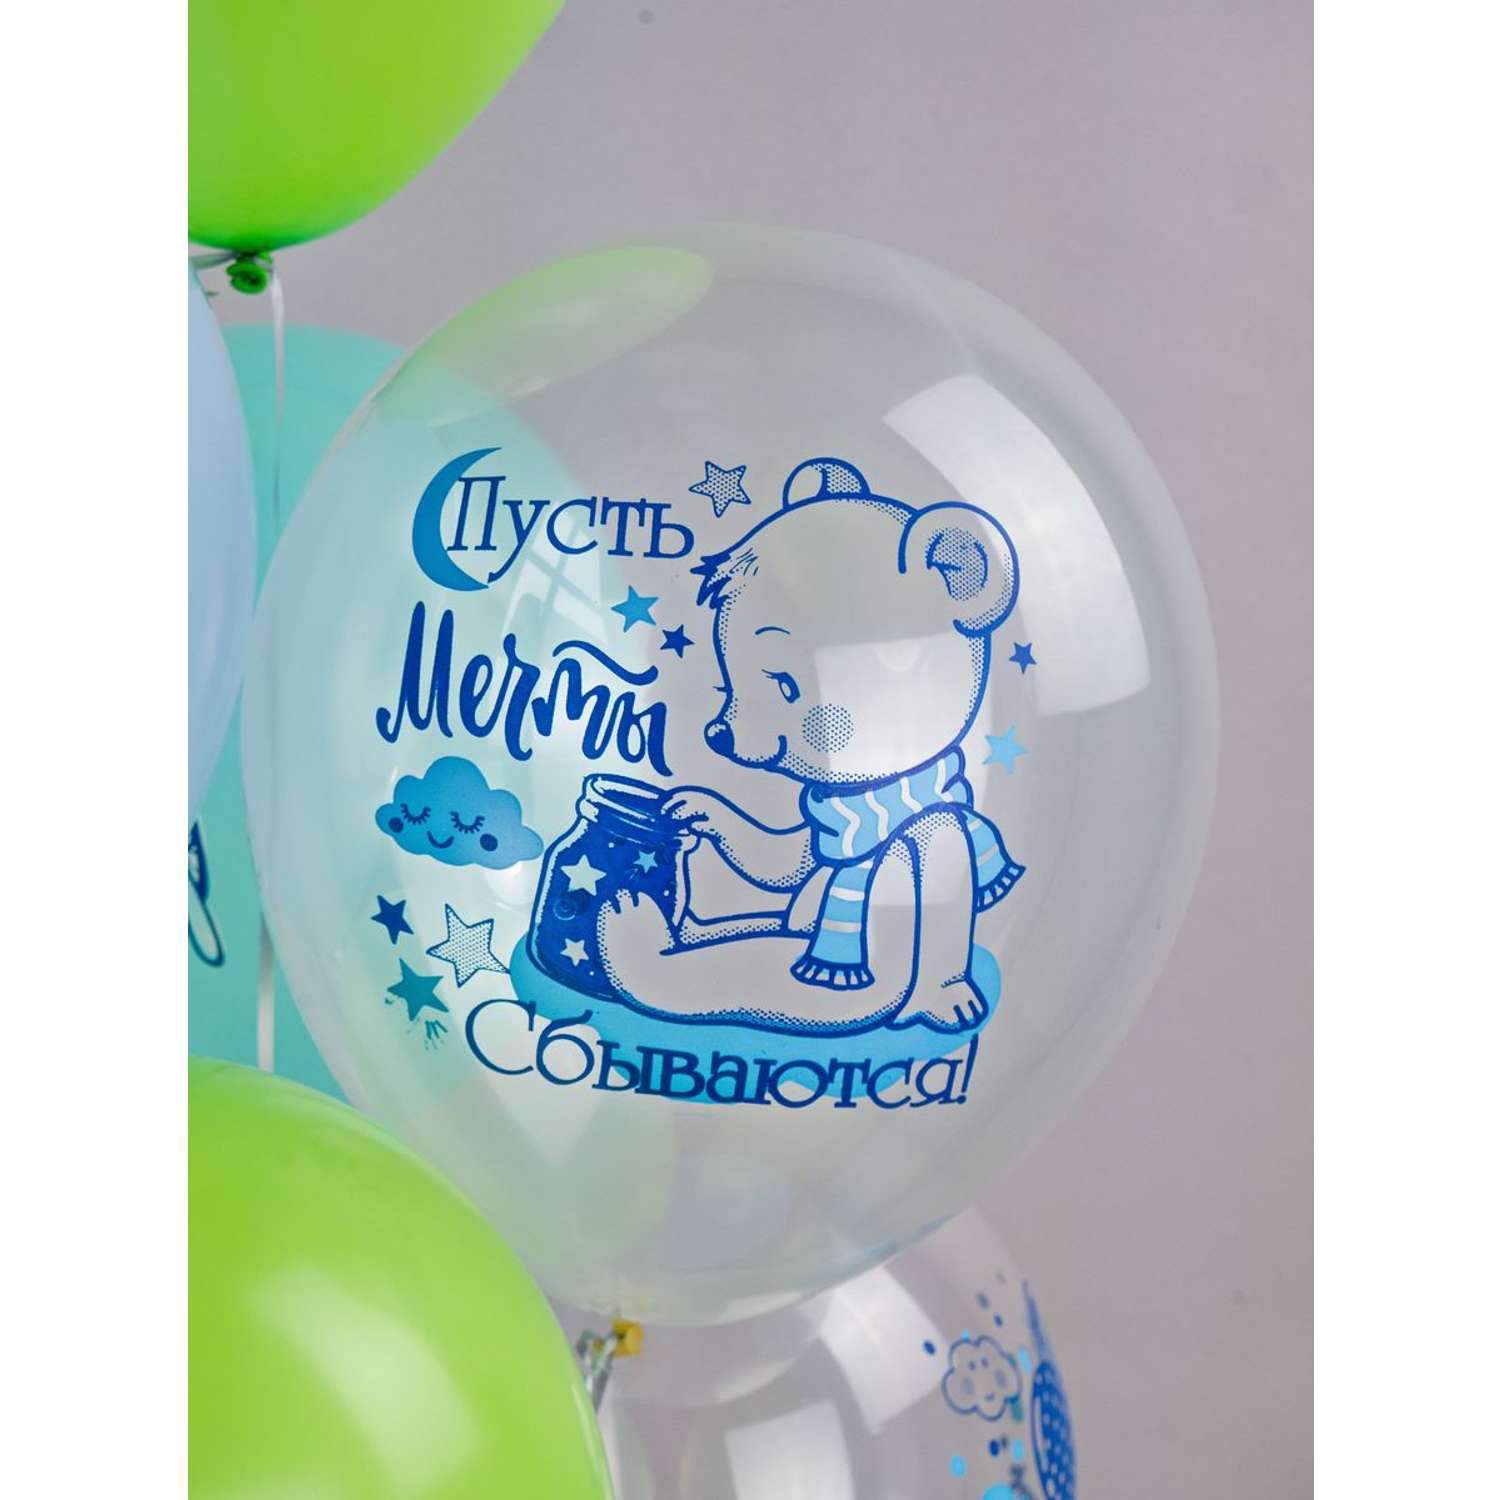 Воздушные шары для мальчика МИКРОС. Территория праздника «С днем рождения» с рисунками набор 10 штук - фото 6